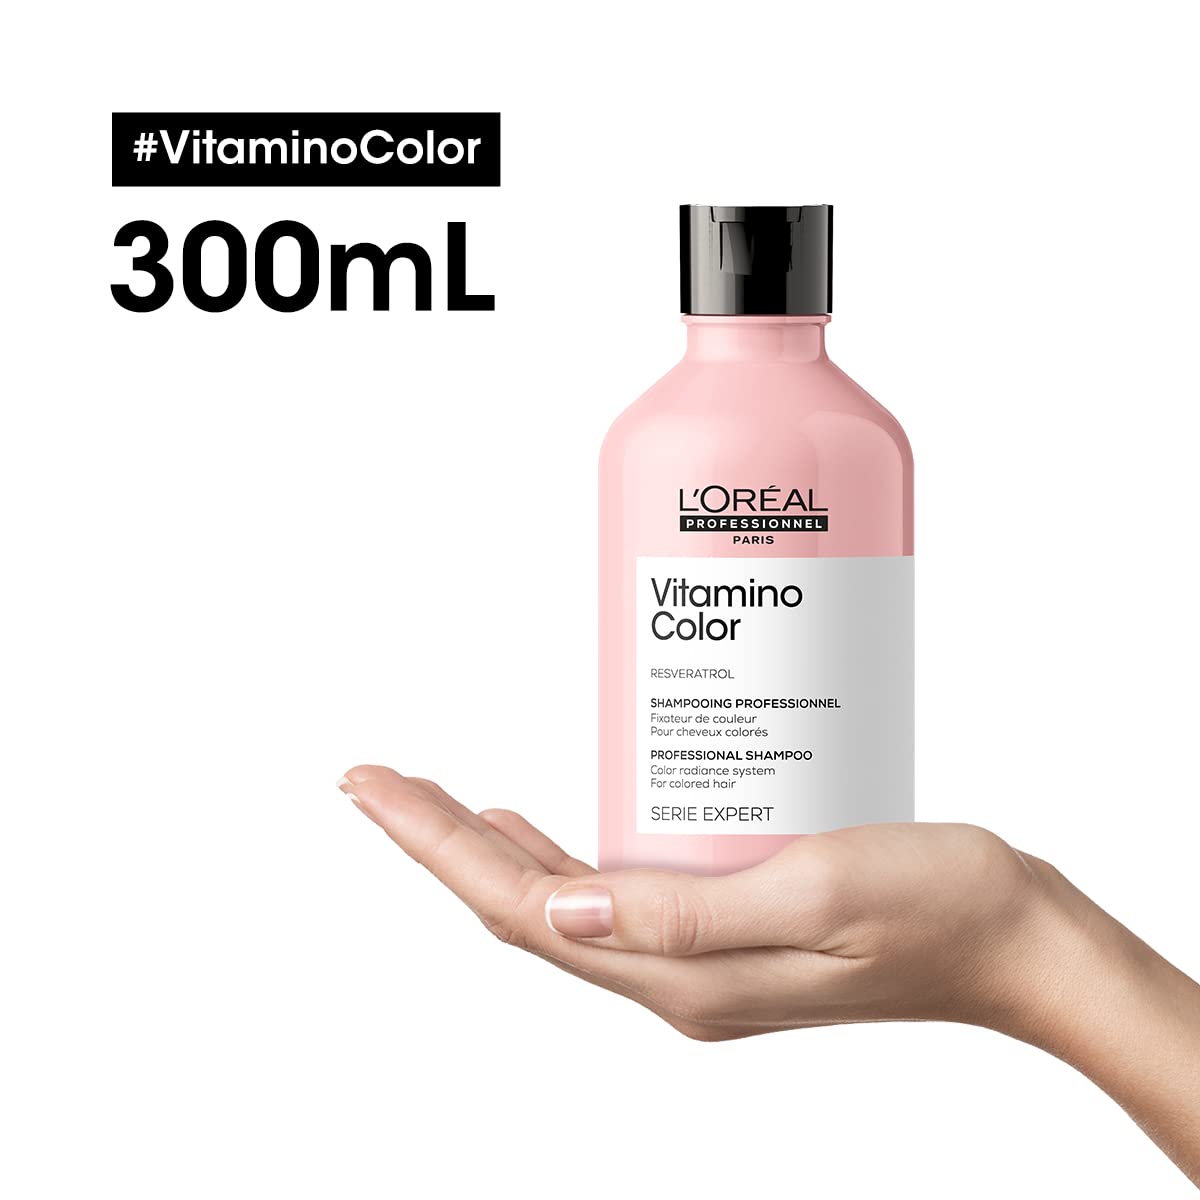 L'Oréal Professionnel Vitamino Color Shampoo